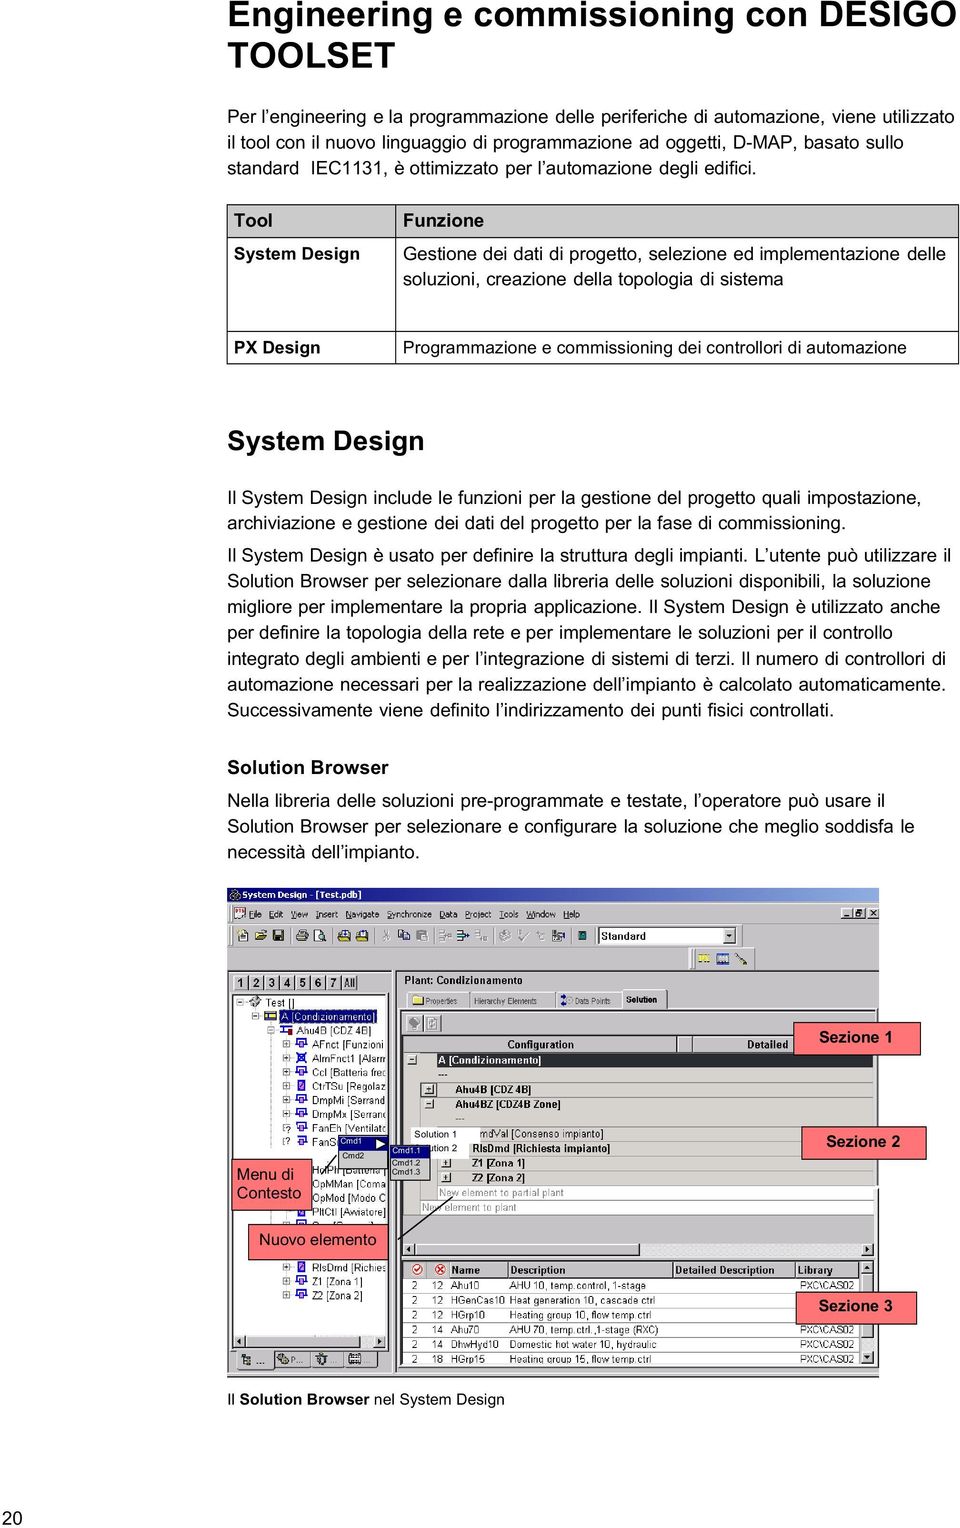 Tool System Design Funzione Gestione dei dati di progetto, selezione ed implementazione delle soluzioni, creazione della topologia di sistema PX Design Programmazione e commissioning dei controllori